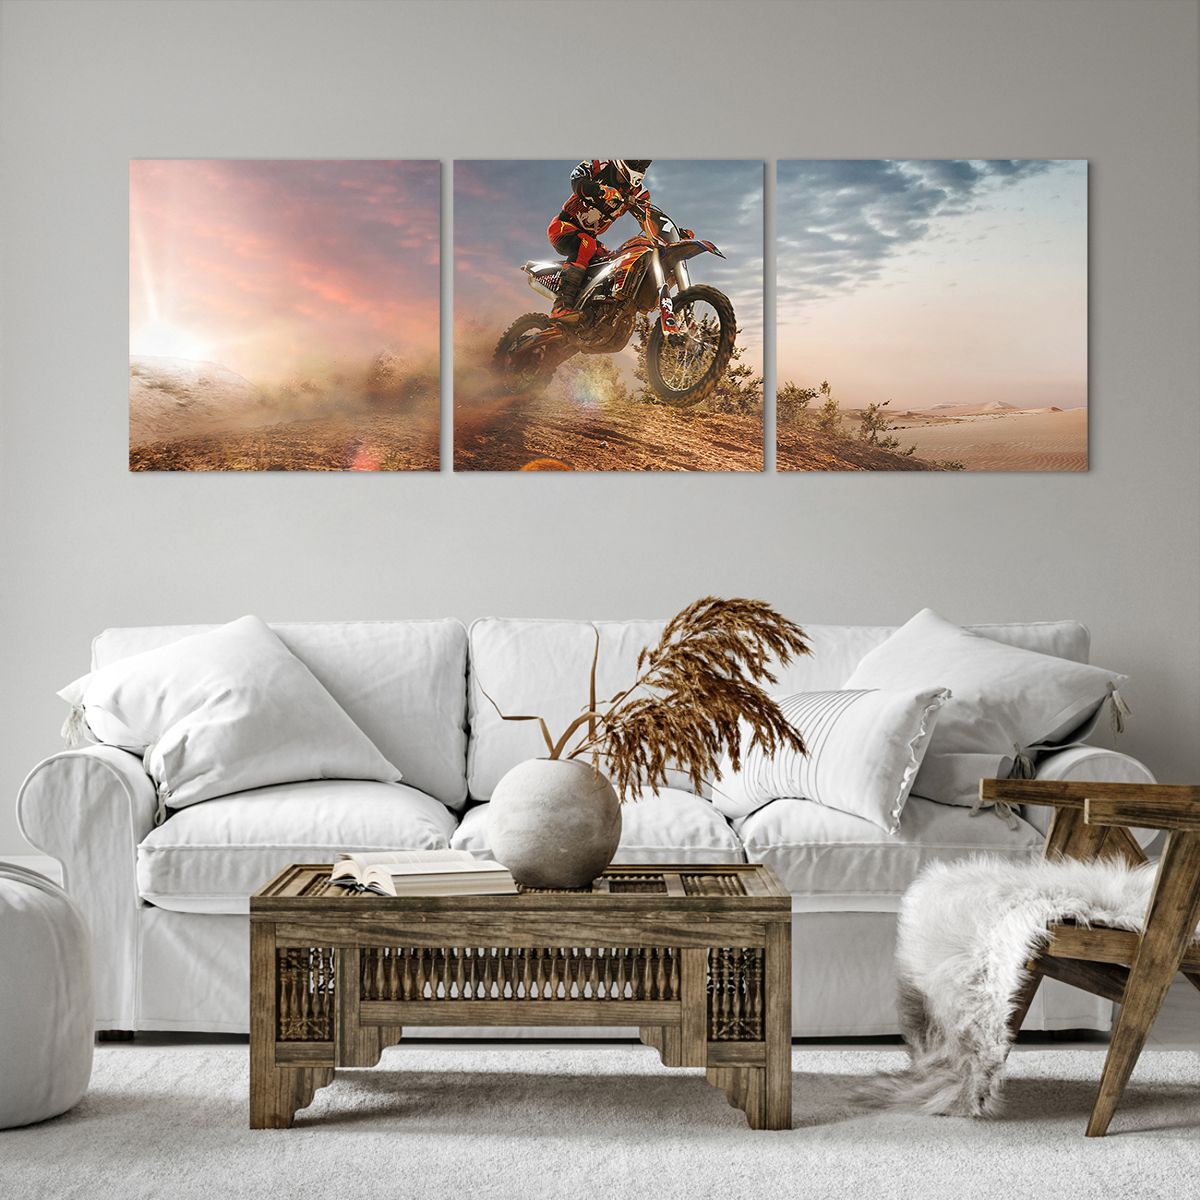 Bild auf Leinwand Sport, Bild auf Leinwand Moto-Cross, Bild auf Leinwand Motorradfahrer, Bild auf Leinwand Wettbewerb, Bild auf Leinwand Geschwindigkeit